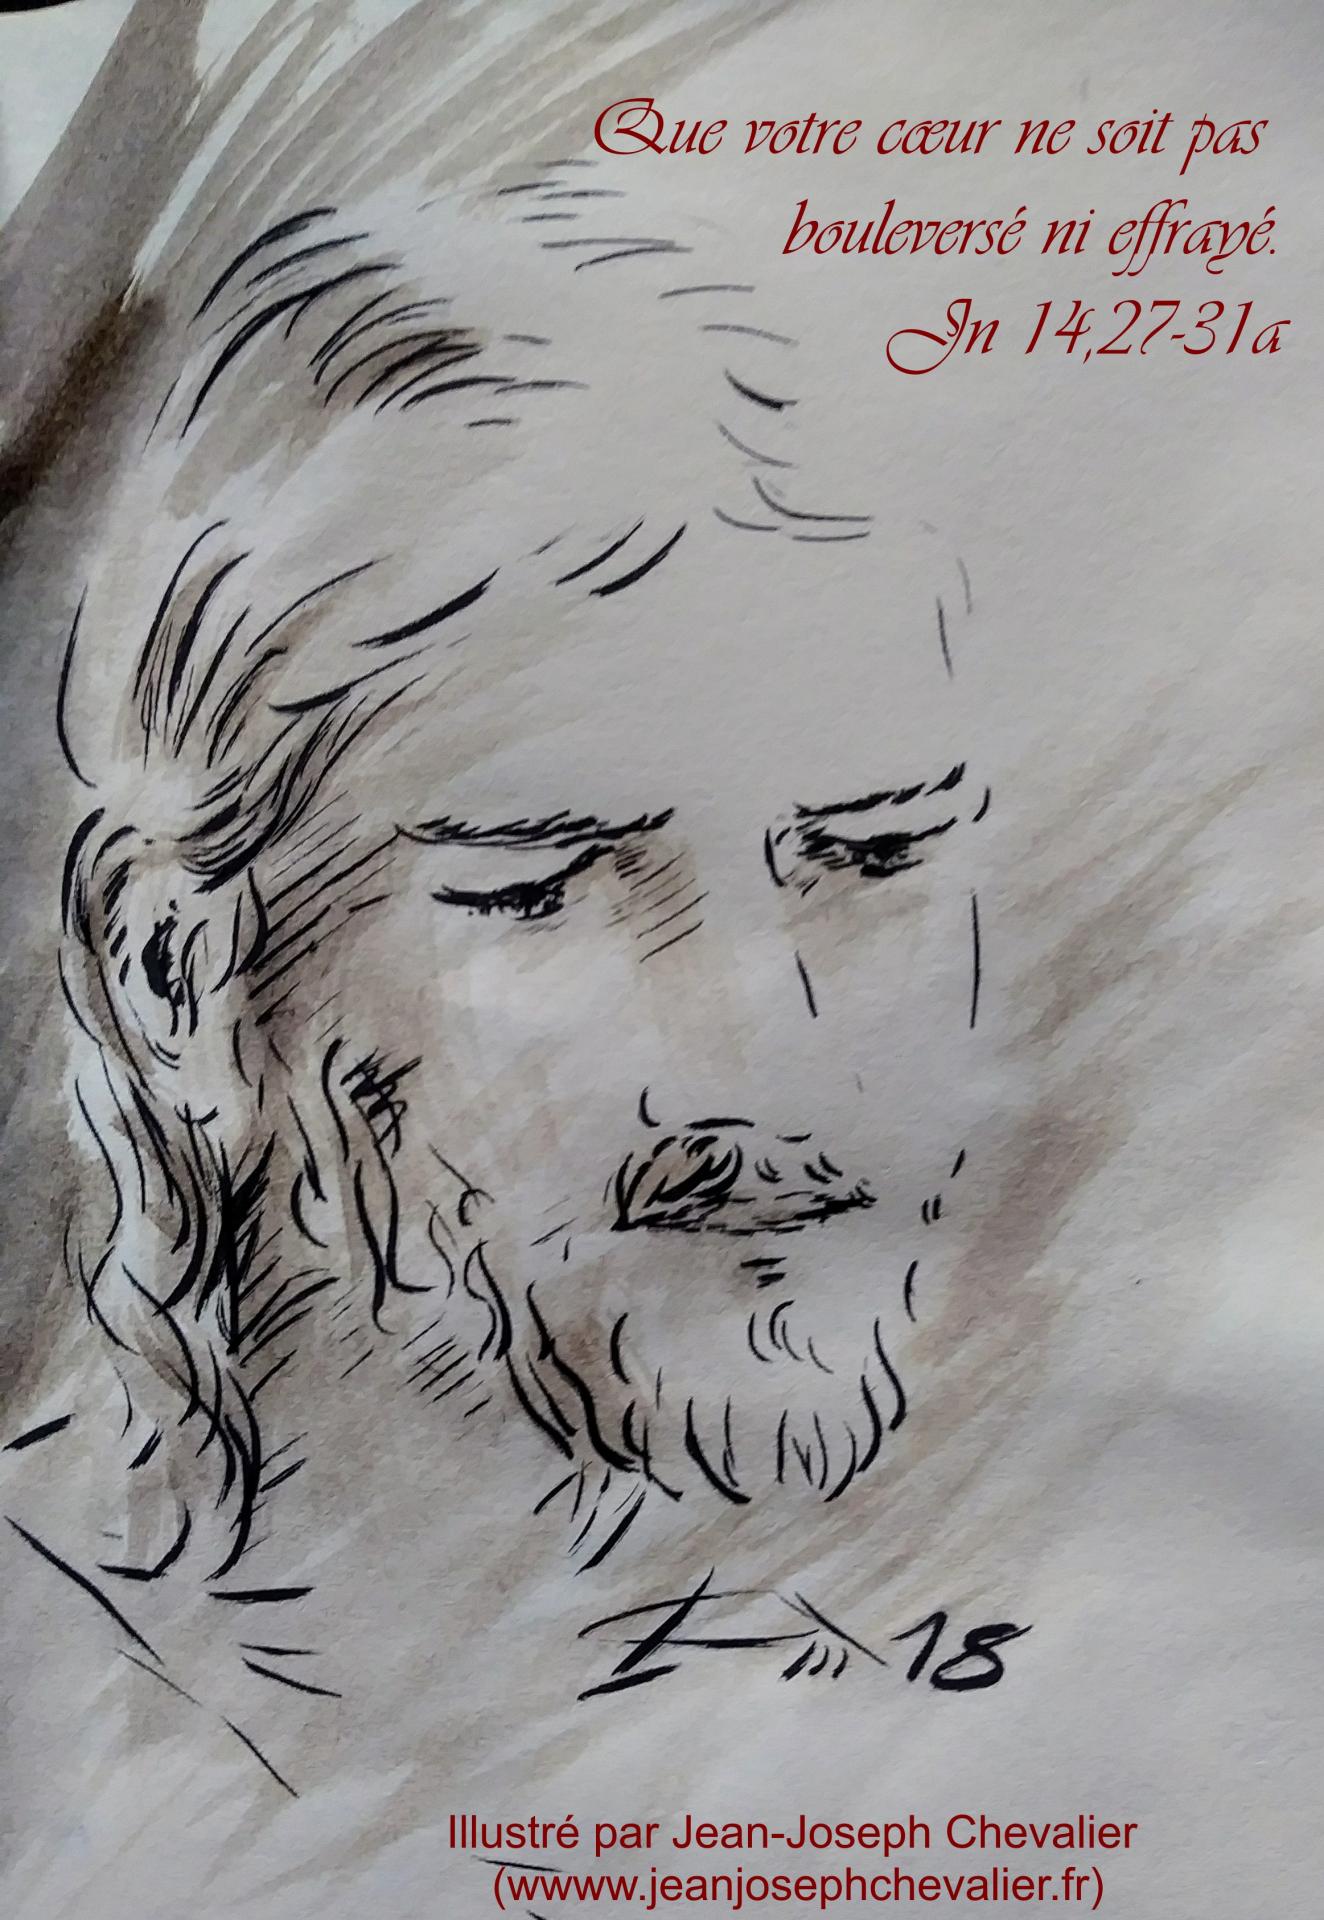 1 mai 2018 evangile du jour illustre par un dessin au lavis de jean joseph chevalier image